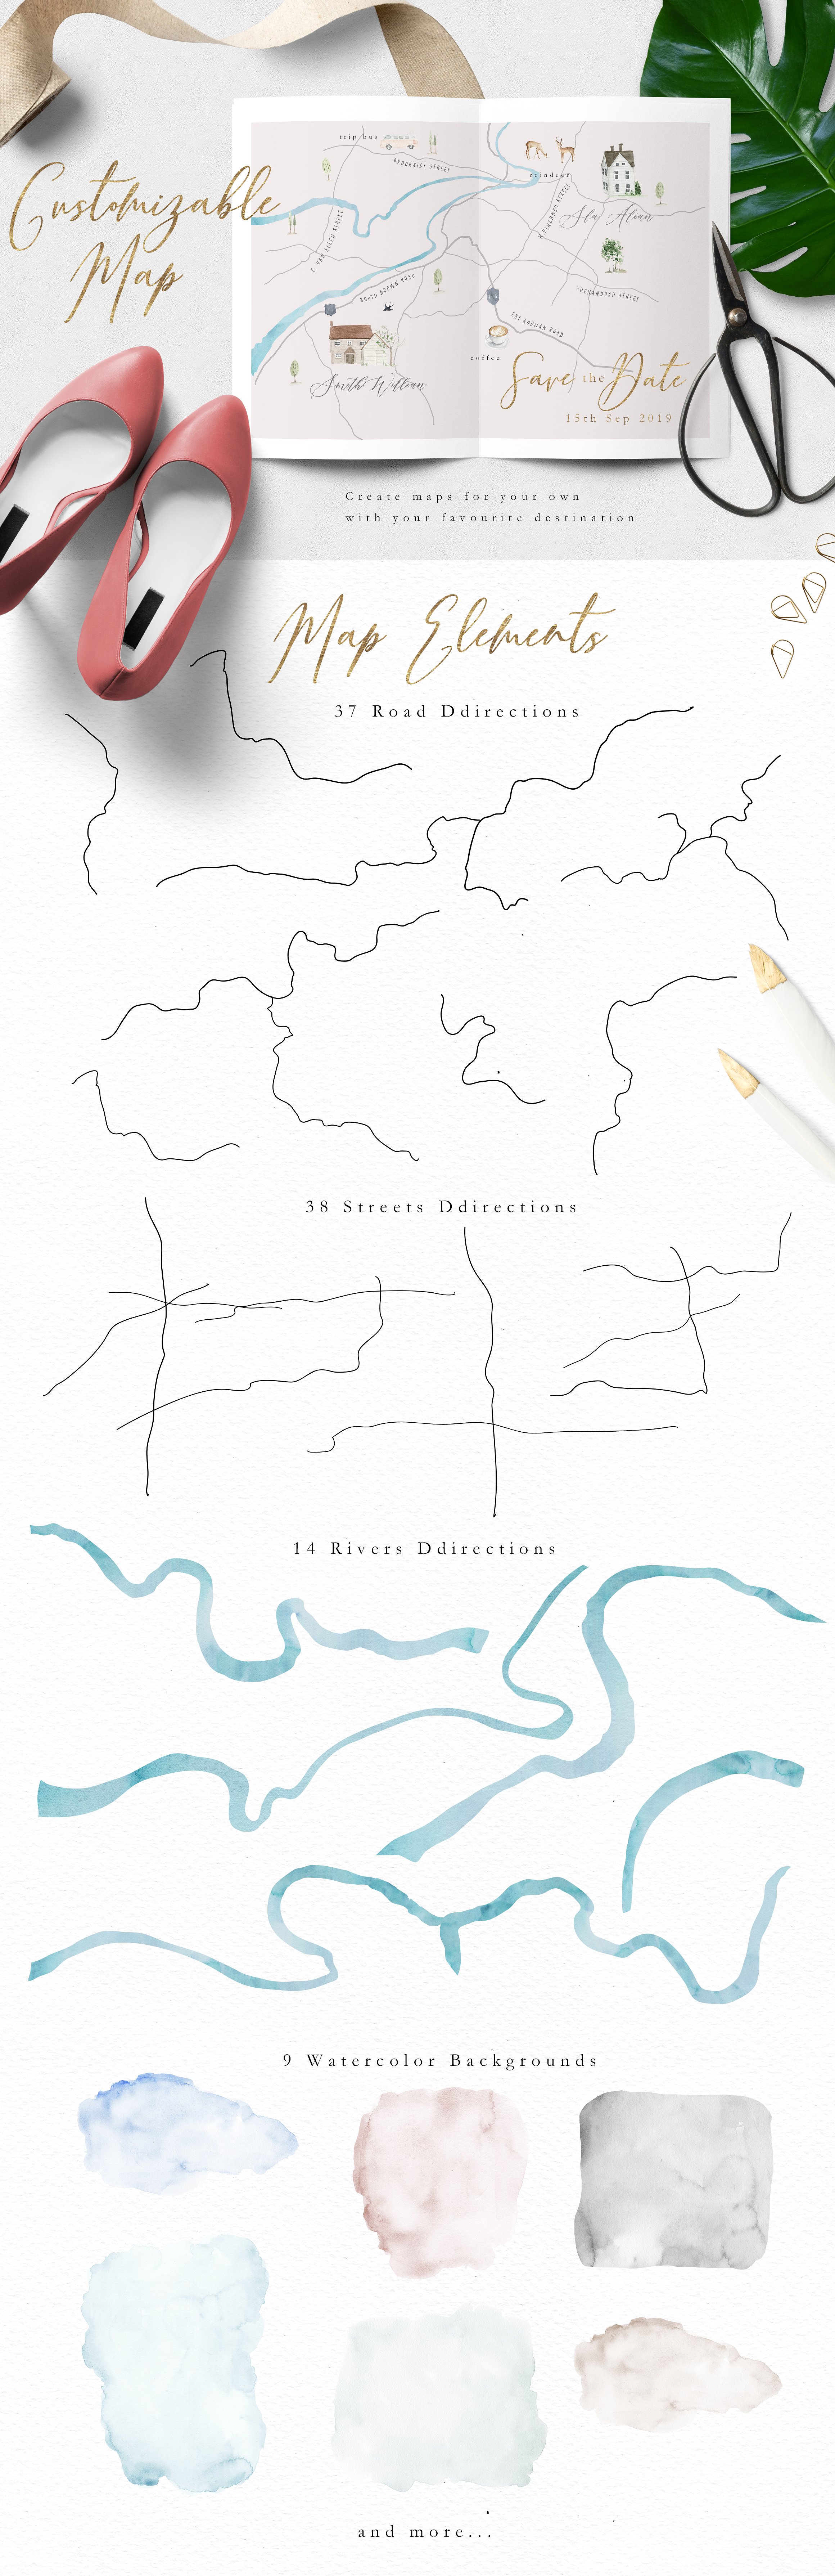 水彩手绘简易地图插画素材 Map Creator插图1